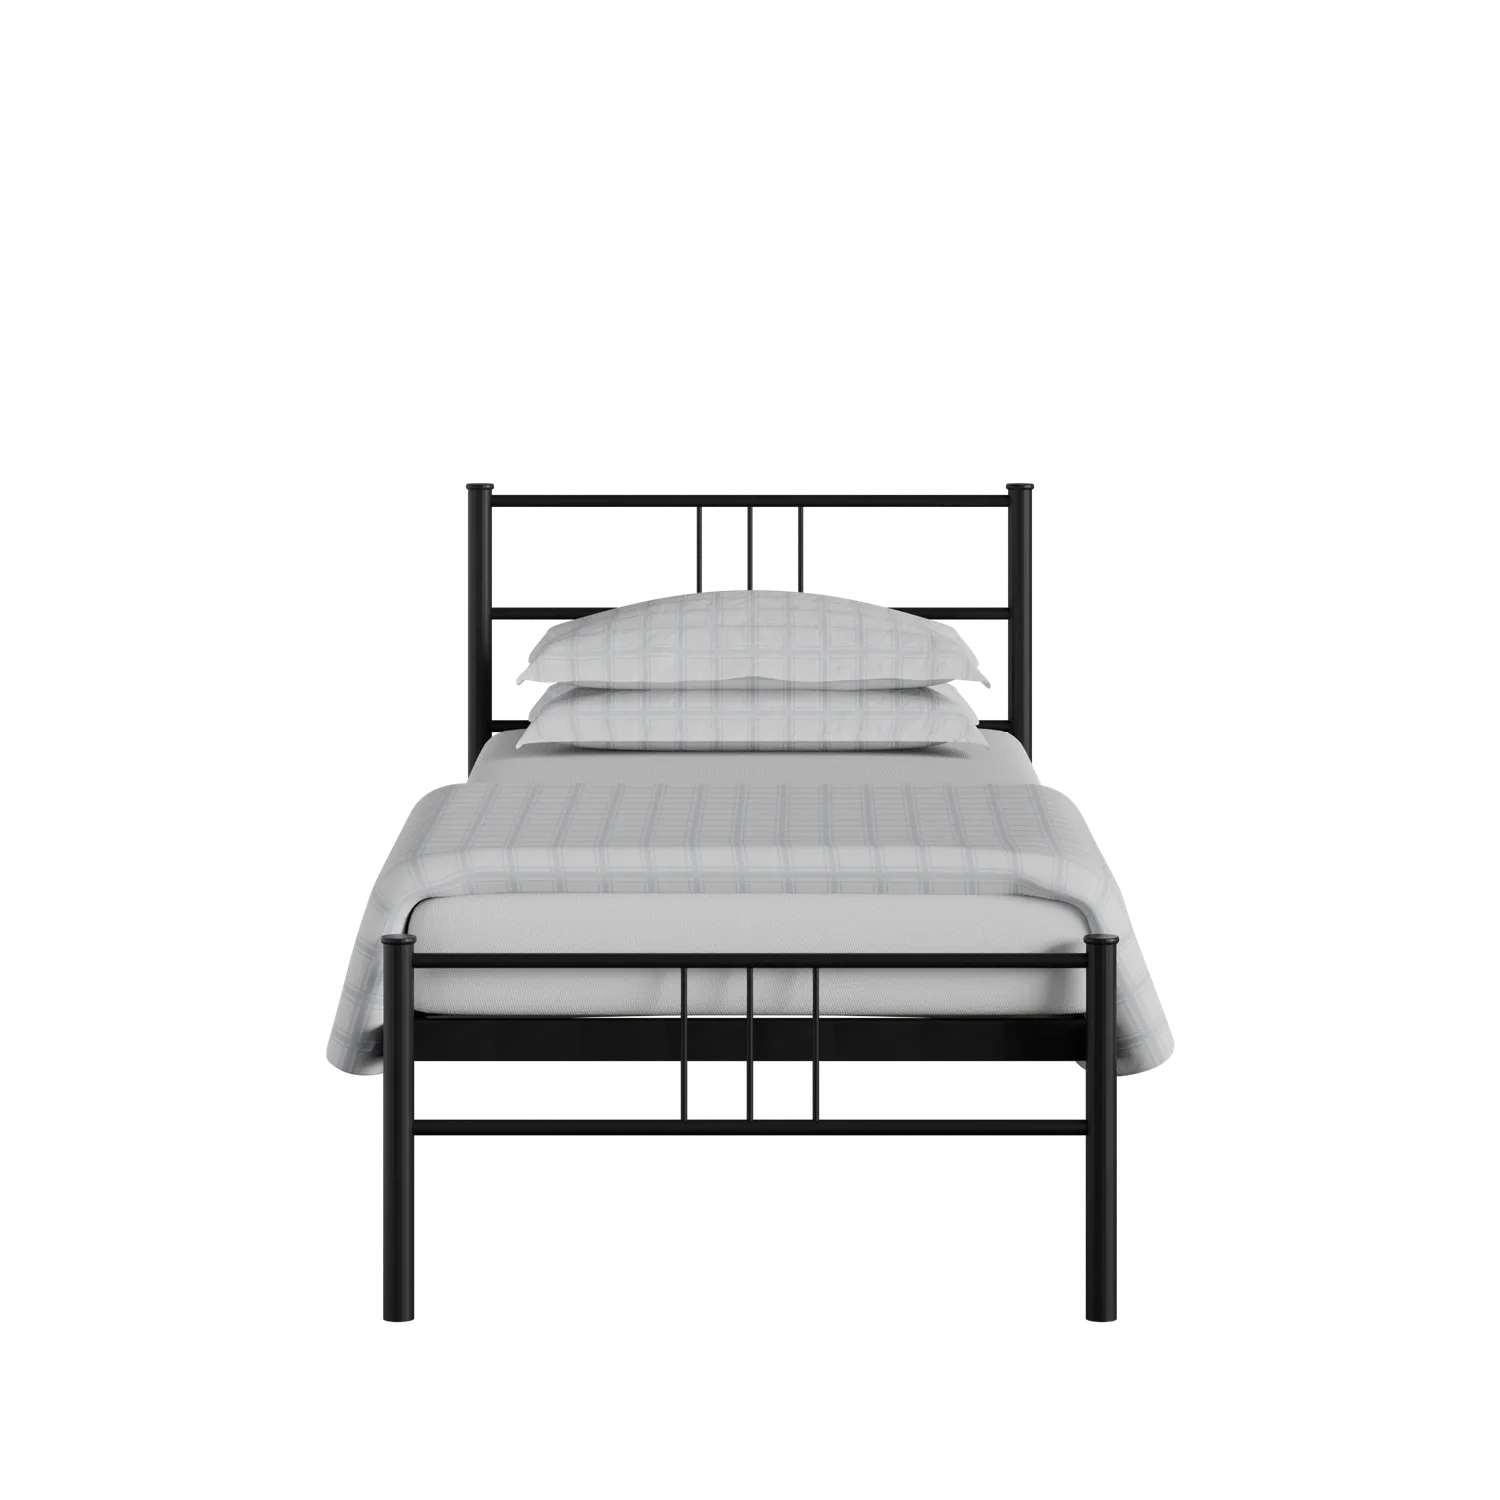 Mortlake cama individual de metal en negro